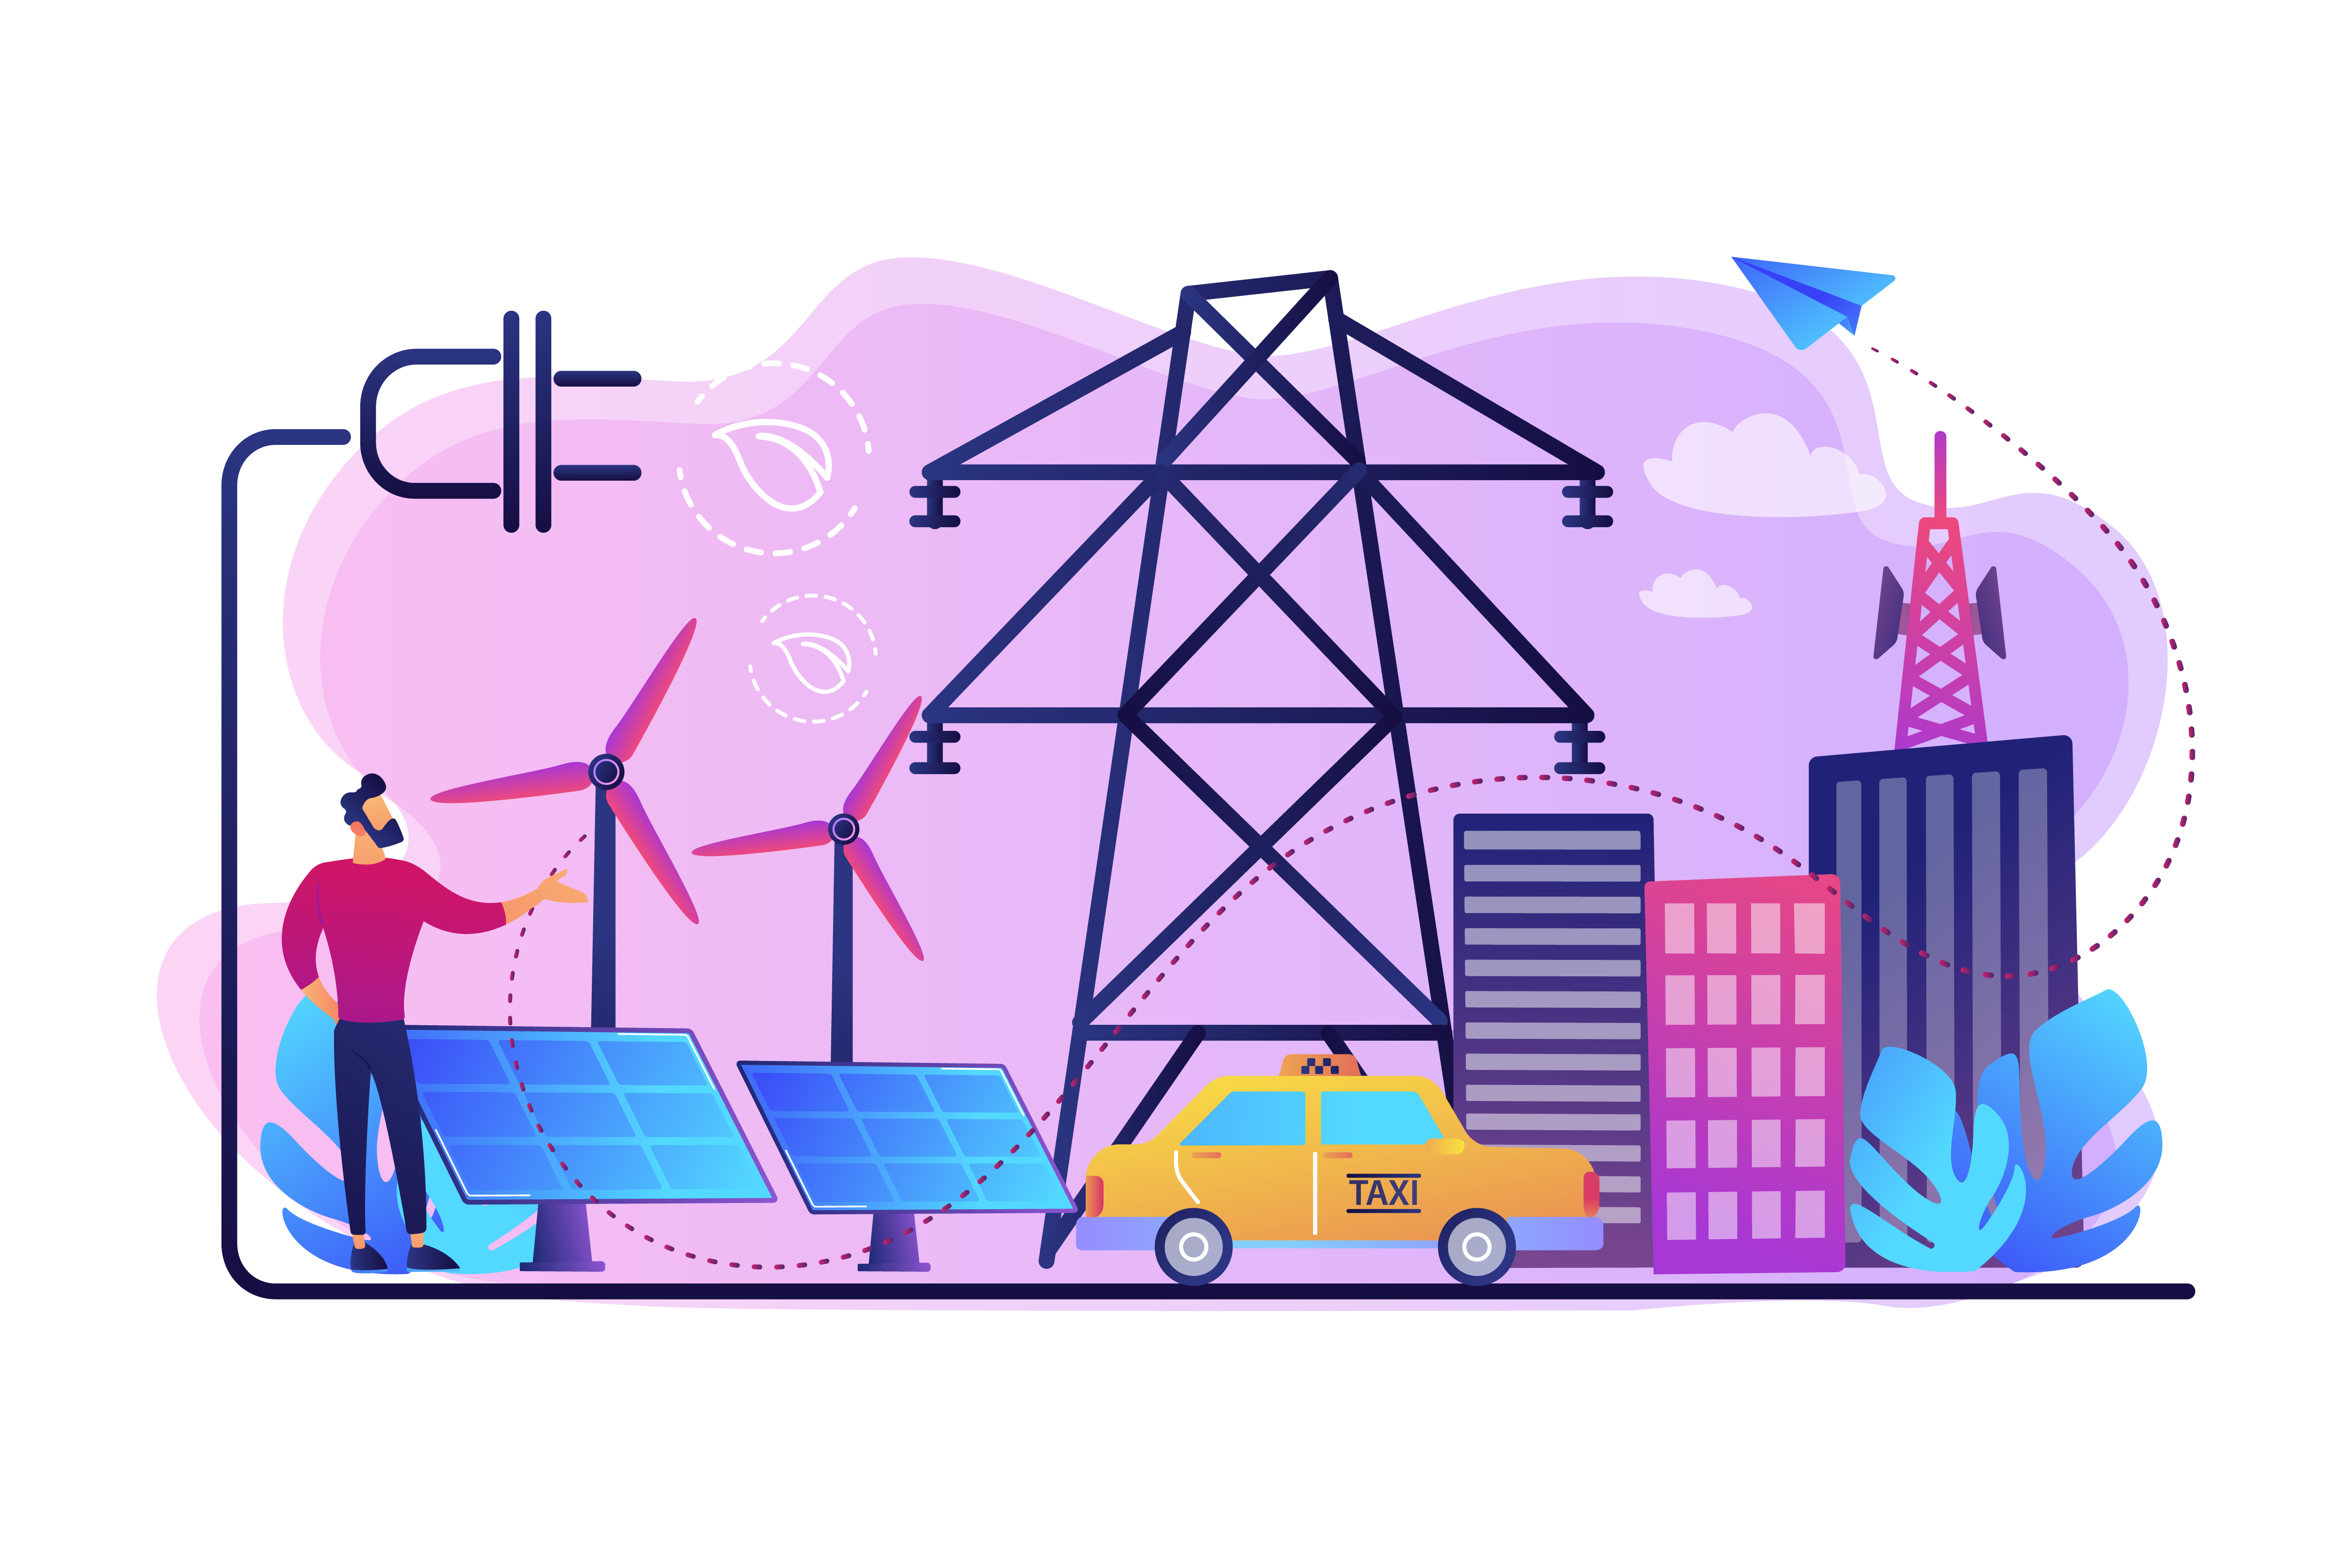 Ilustração mostrando cidade com linha de transmissão, veículo e fontes de energia elétrica sustentável